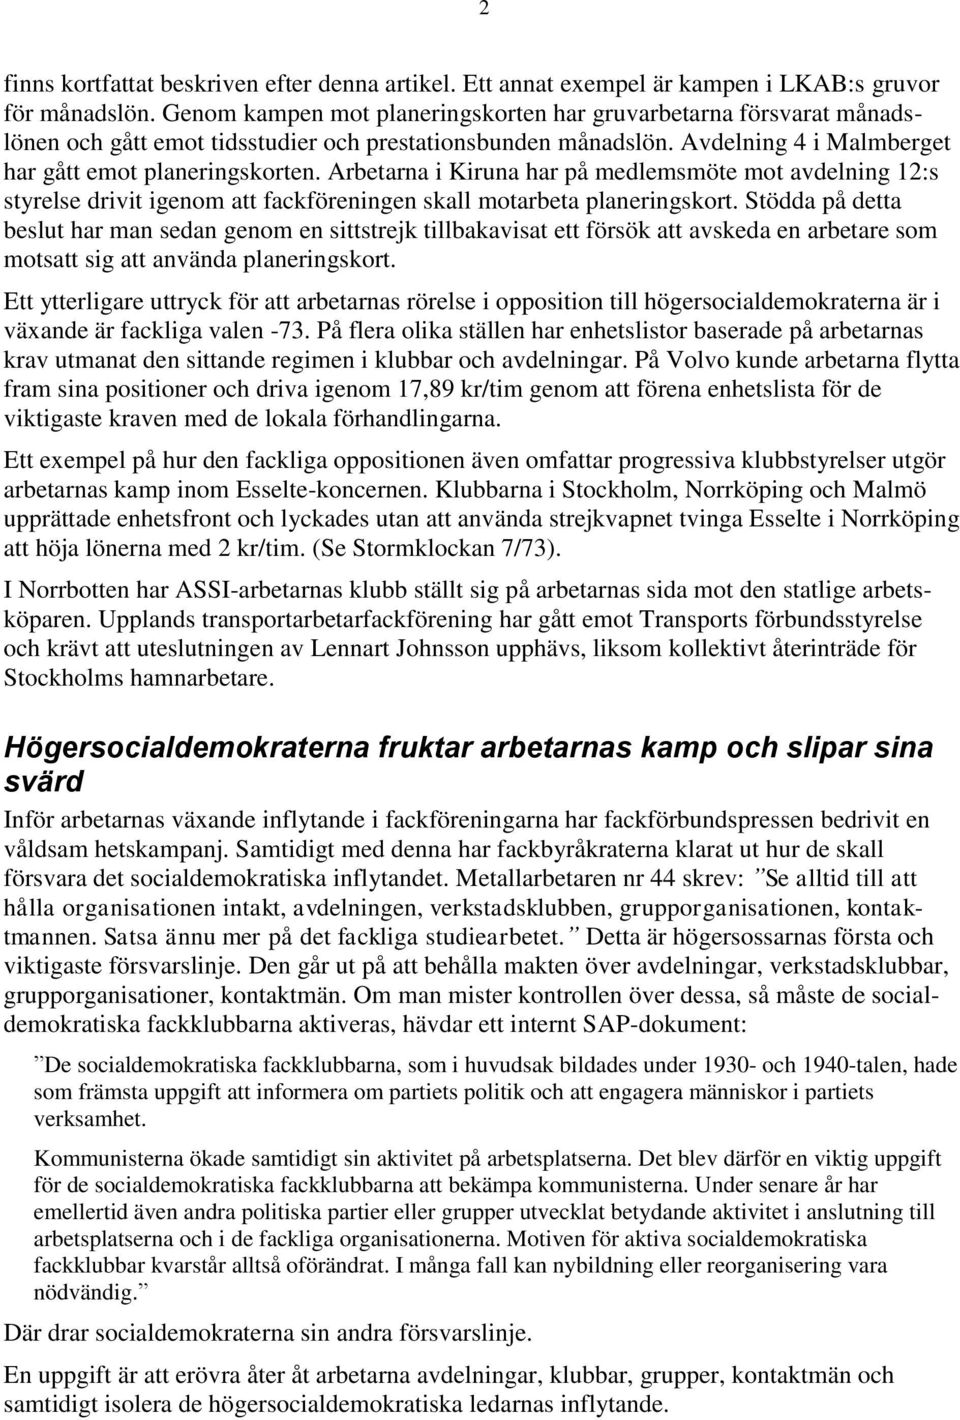 Arbetarna i Kiruna har på medlemsmöte mot avdelning 12:s styrelse drivit igenom att fackföreningen skall motarbeta planeringskort.